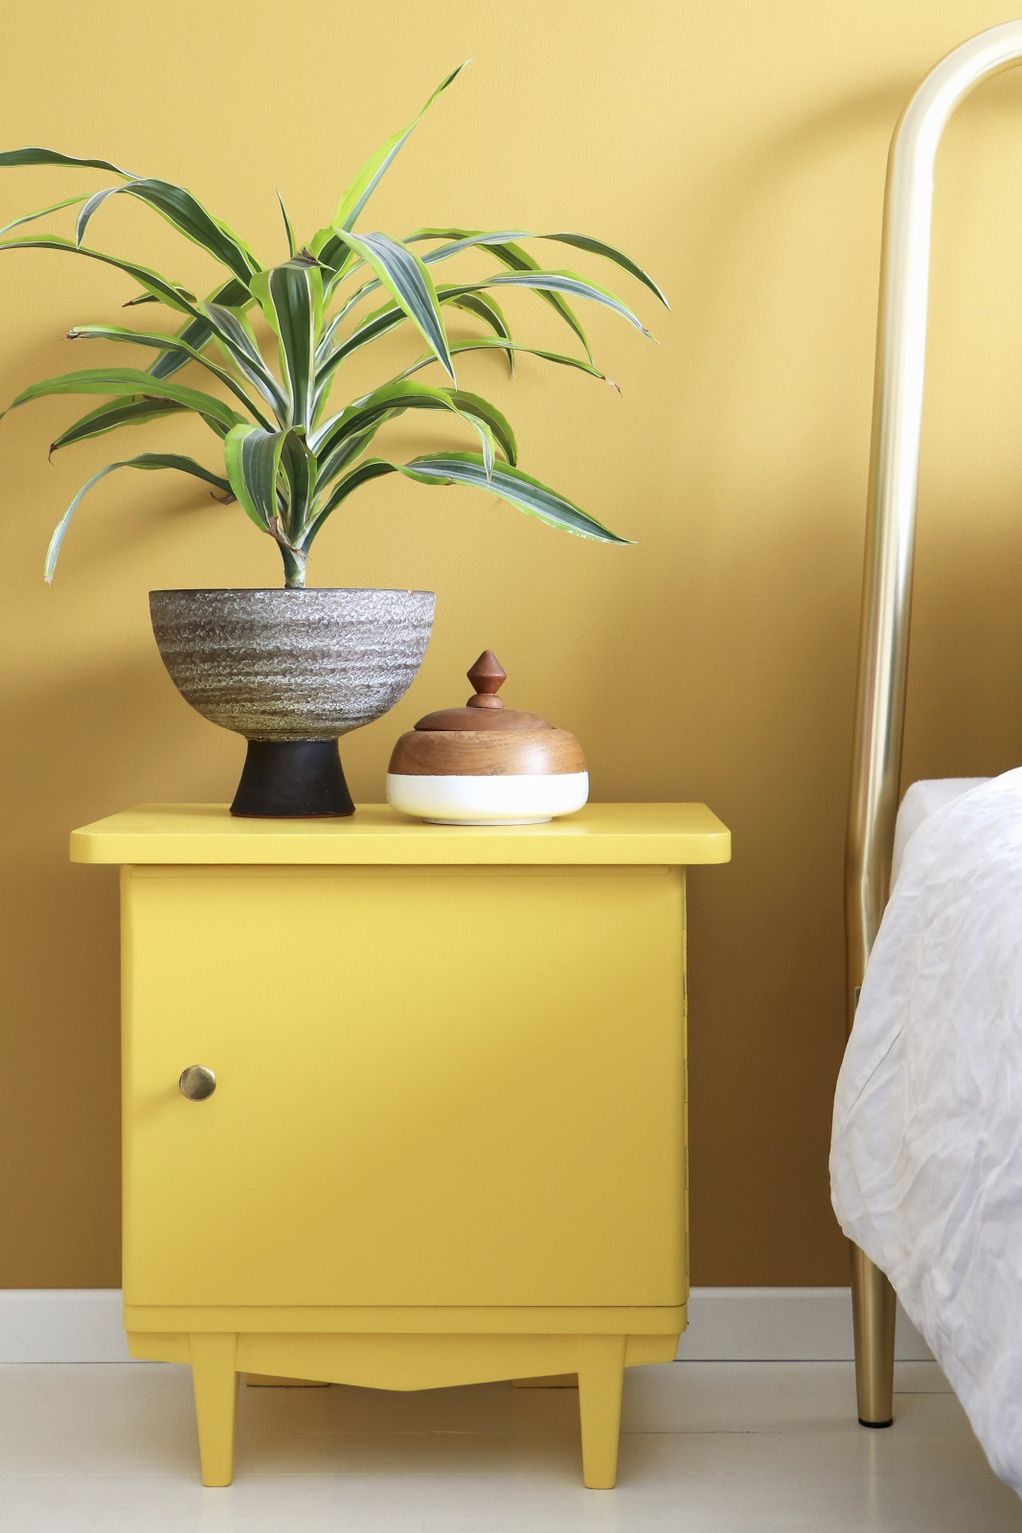 Будат чувство на среќа: 5 совети како да го уредите вашиот дом во топли бои